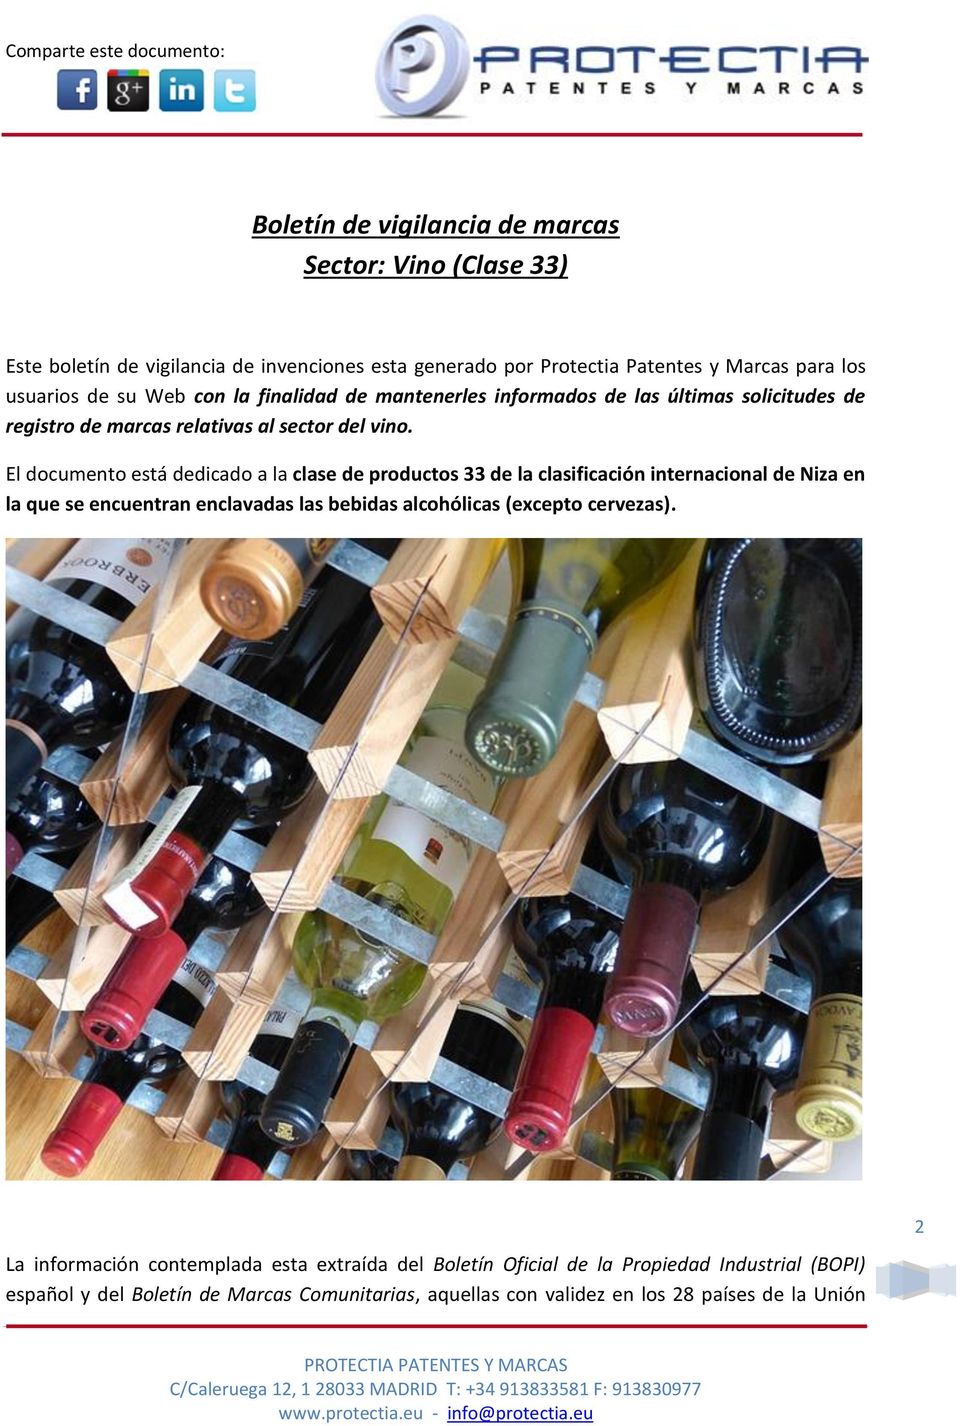 El documento está dedicado a la clase de productos 33 de la clasificación internacional de Niza en la que se encuentran enclavadas las bebidas alcohólicas (excepto cervezas).